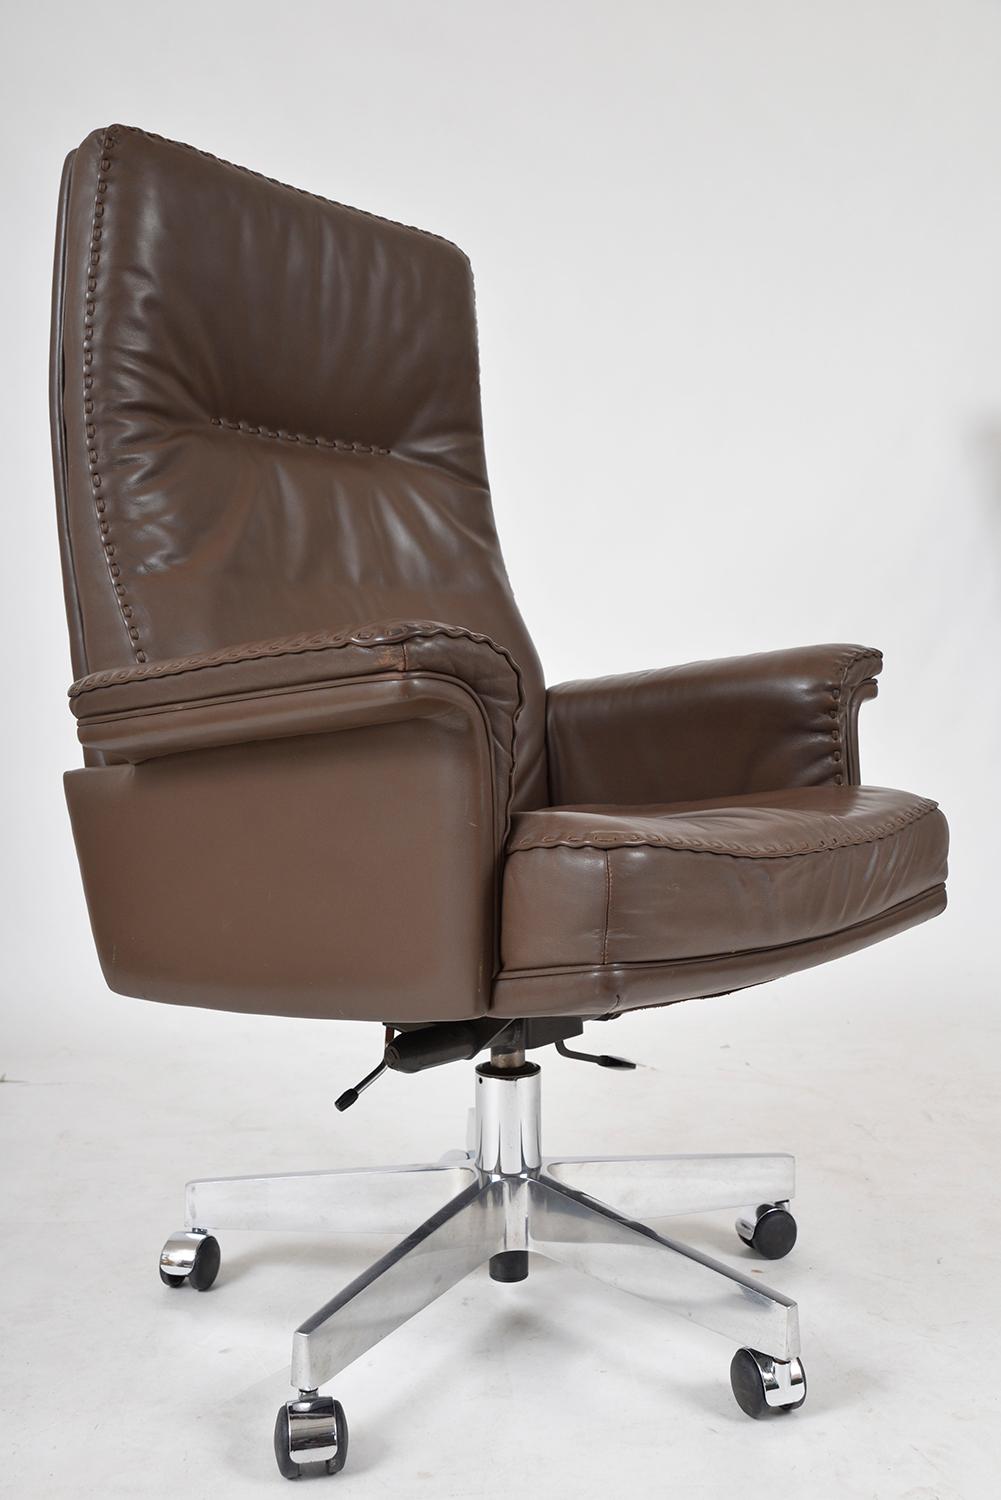 1970s Swiss De Sede Ds 35 Executive Swivel Leather Office Chair Armchair Castors 4